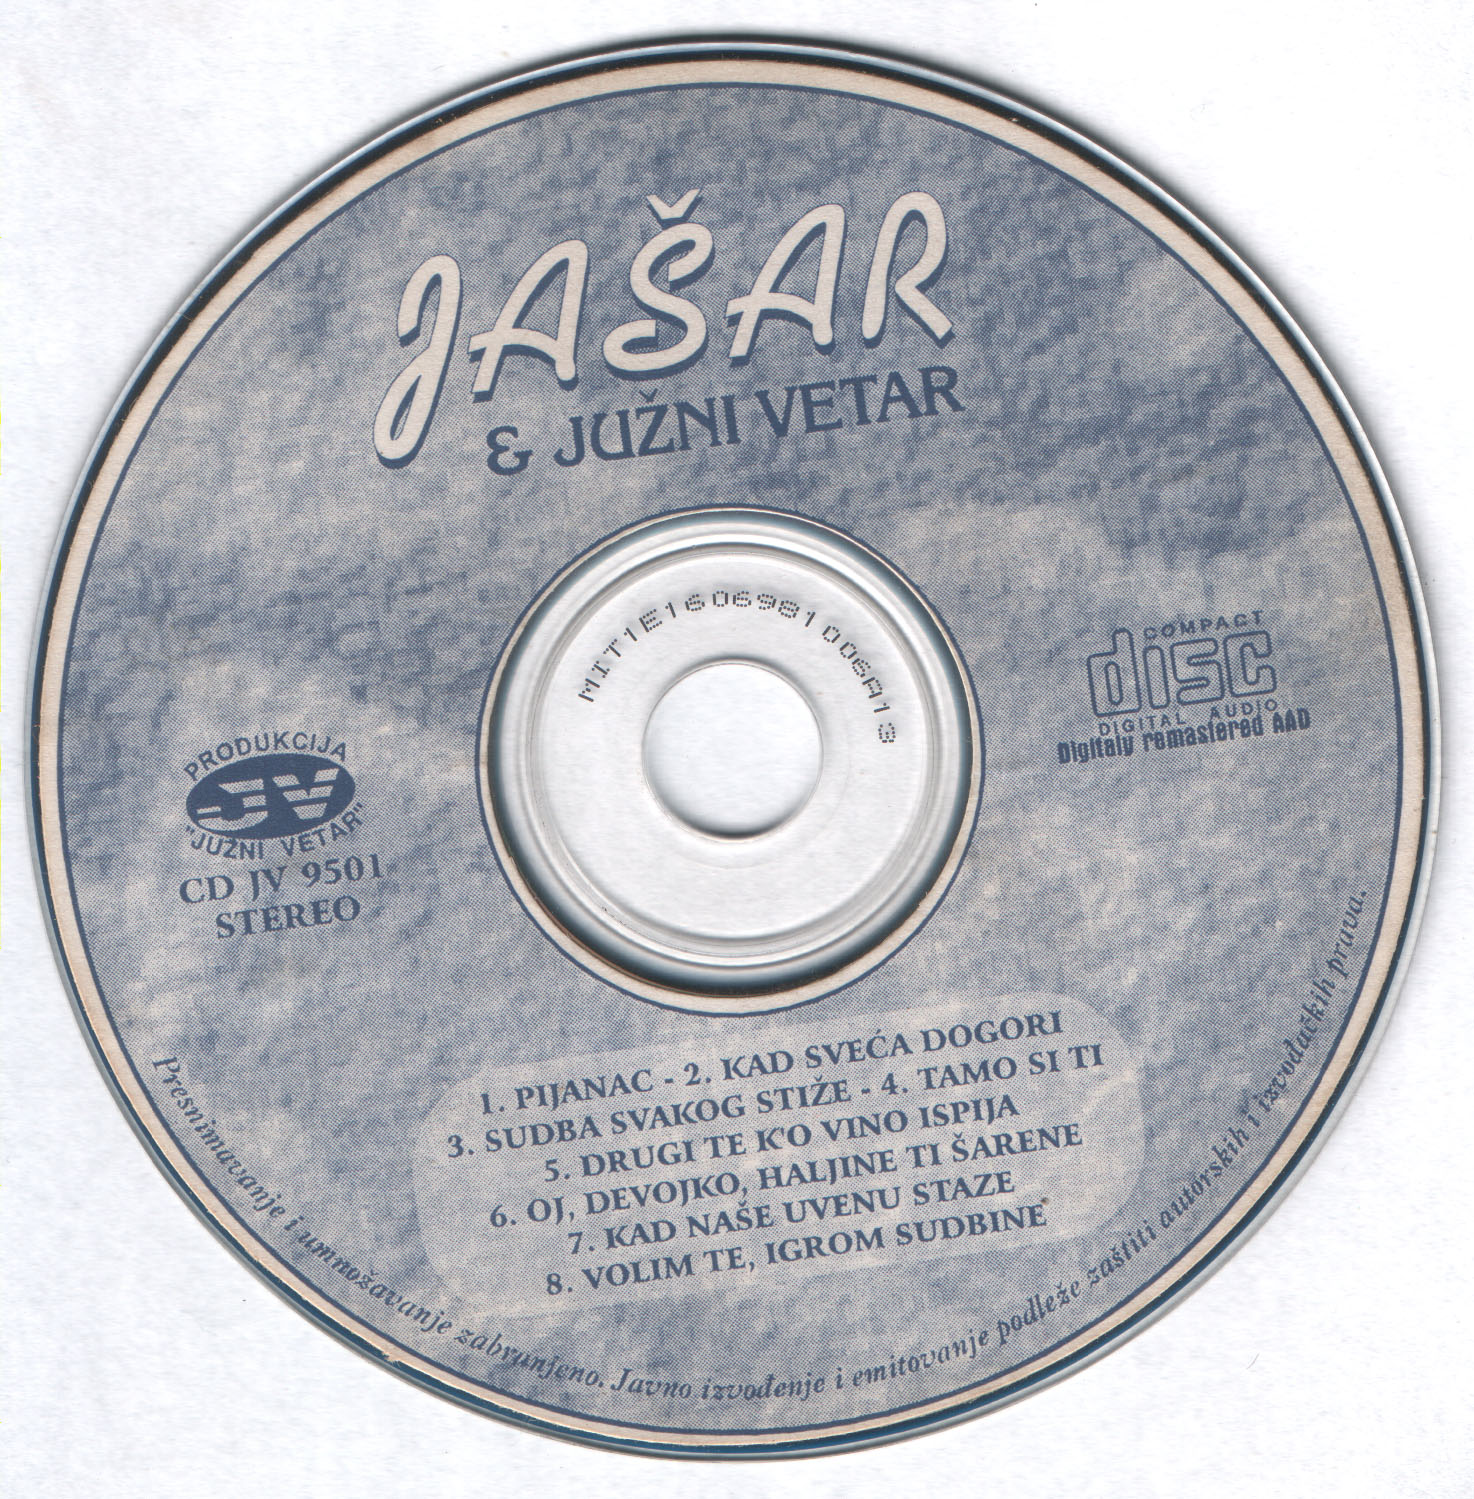 Jasar 1995 Cd